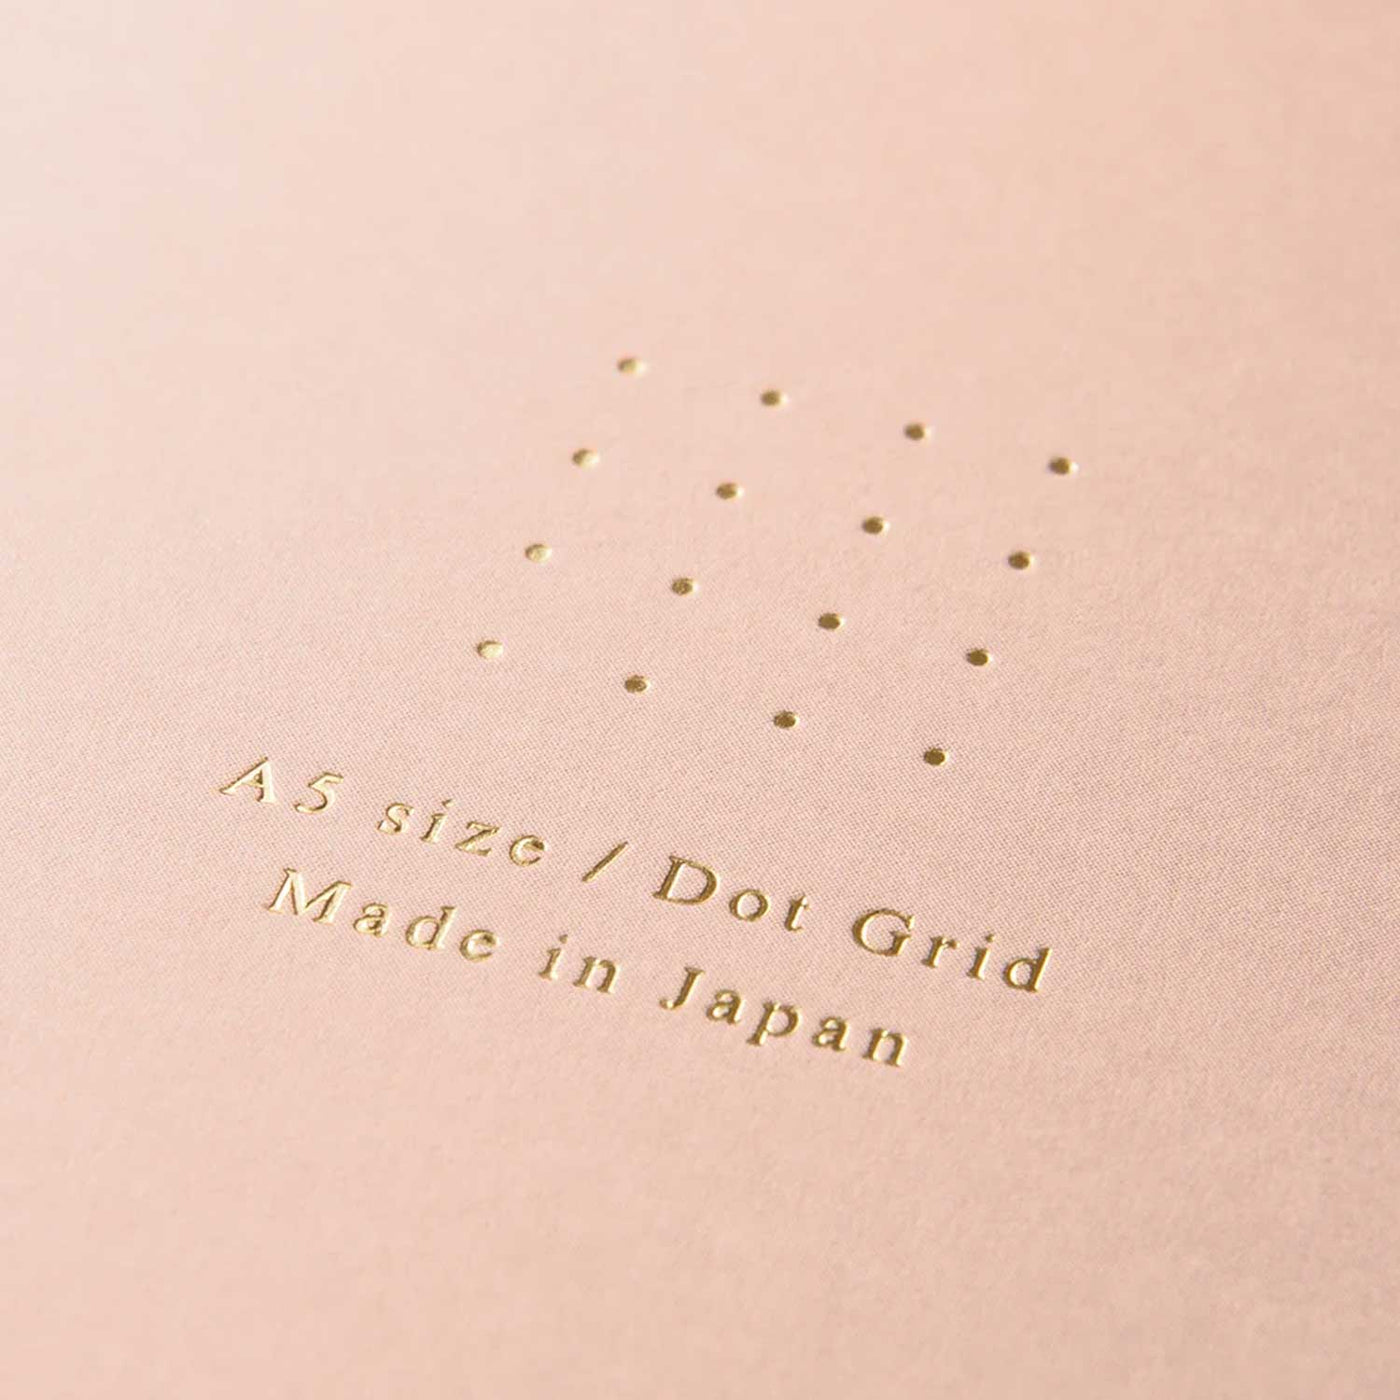 Midori Soft Colour Pink Spiral Notebook - A5 Dotted 6